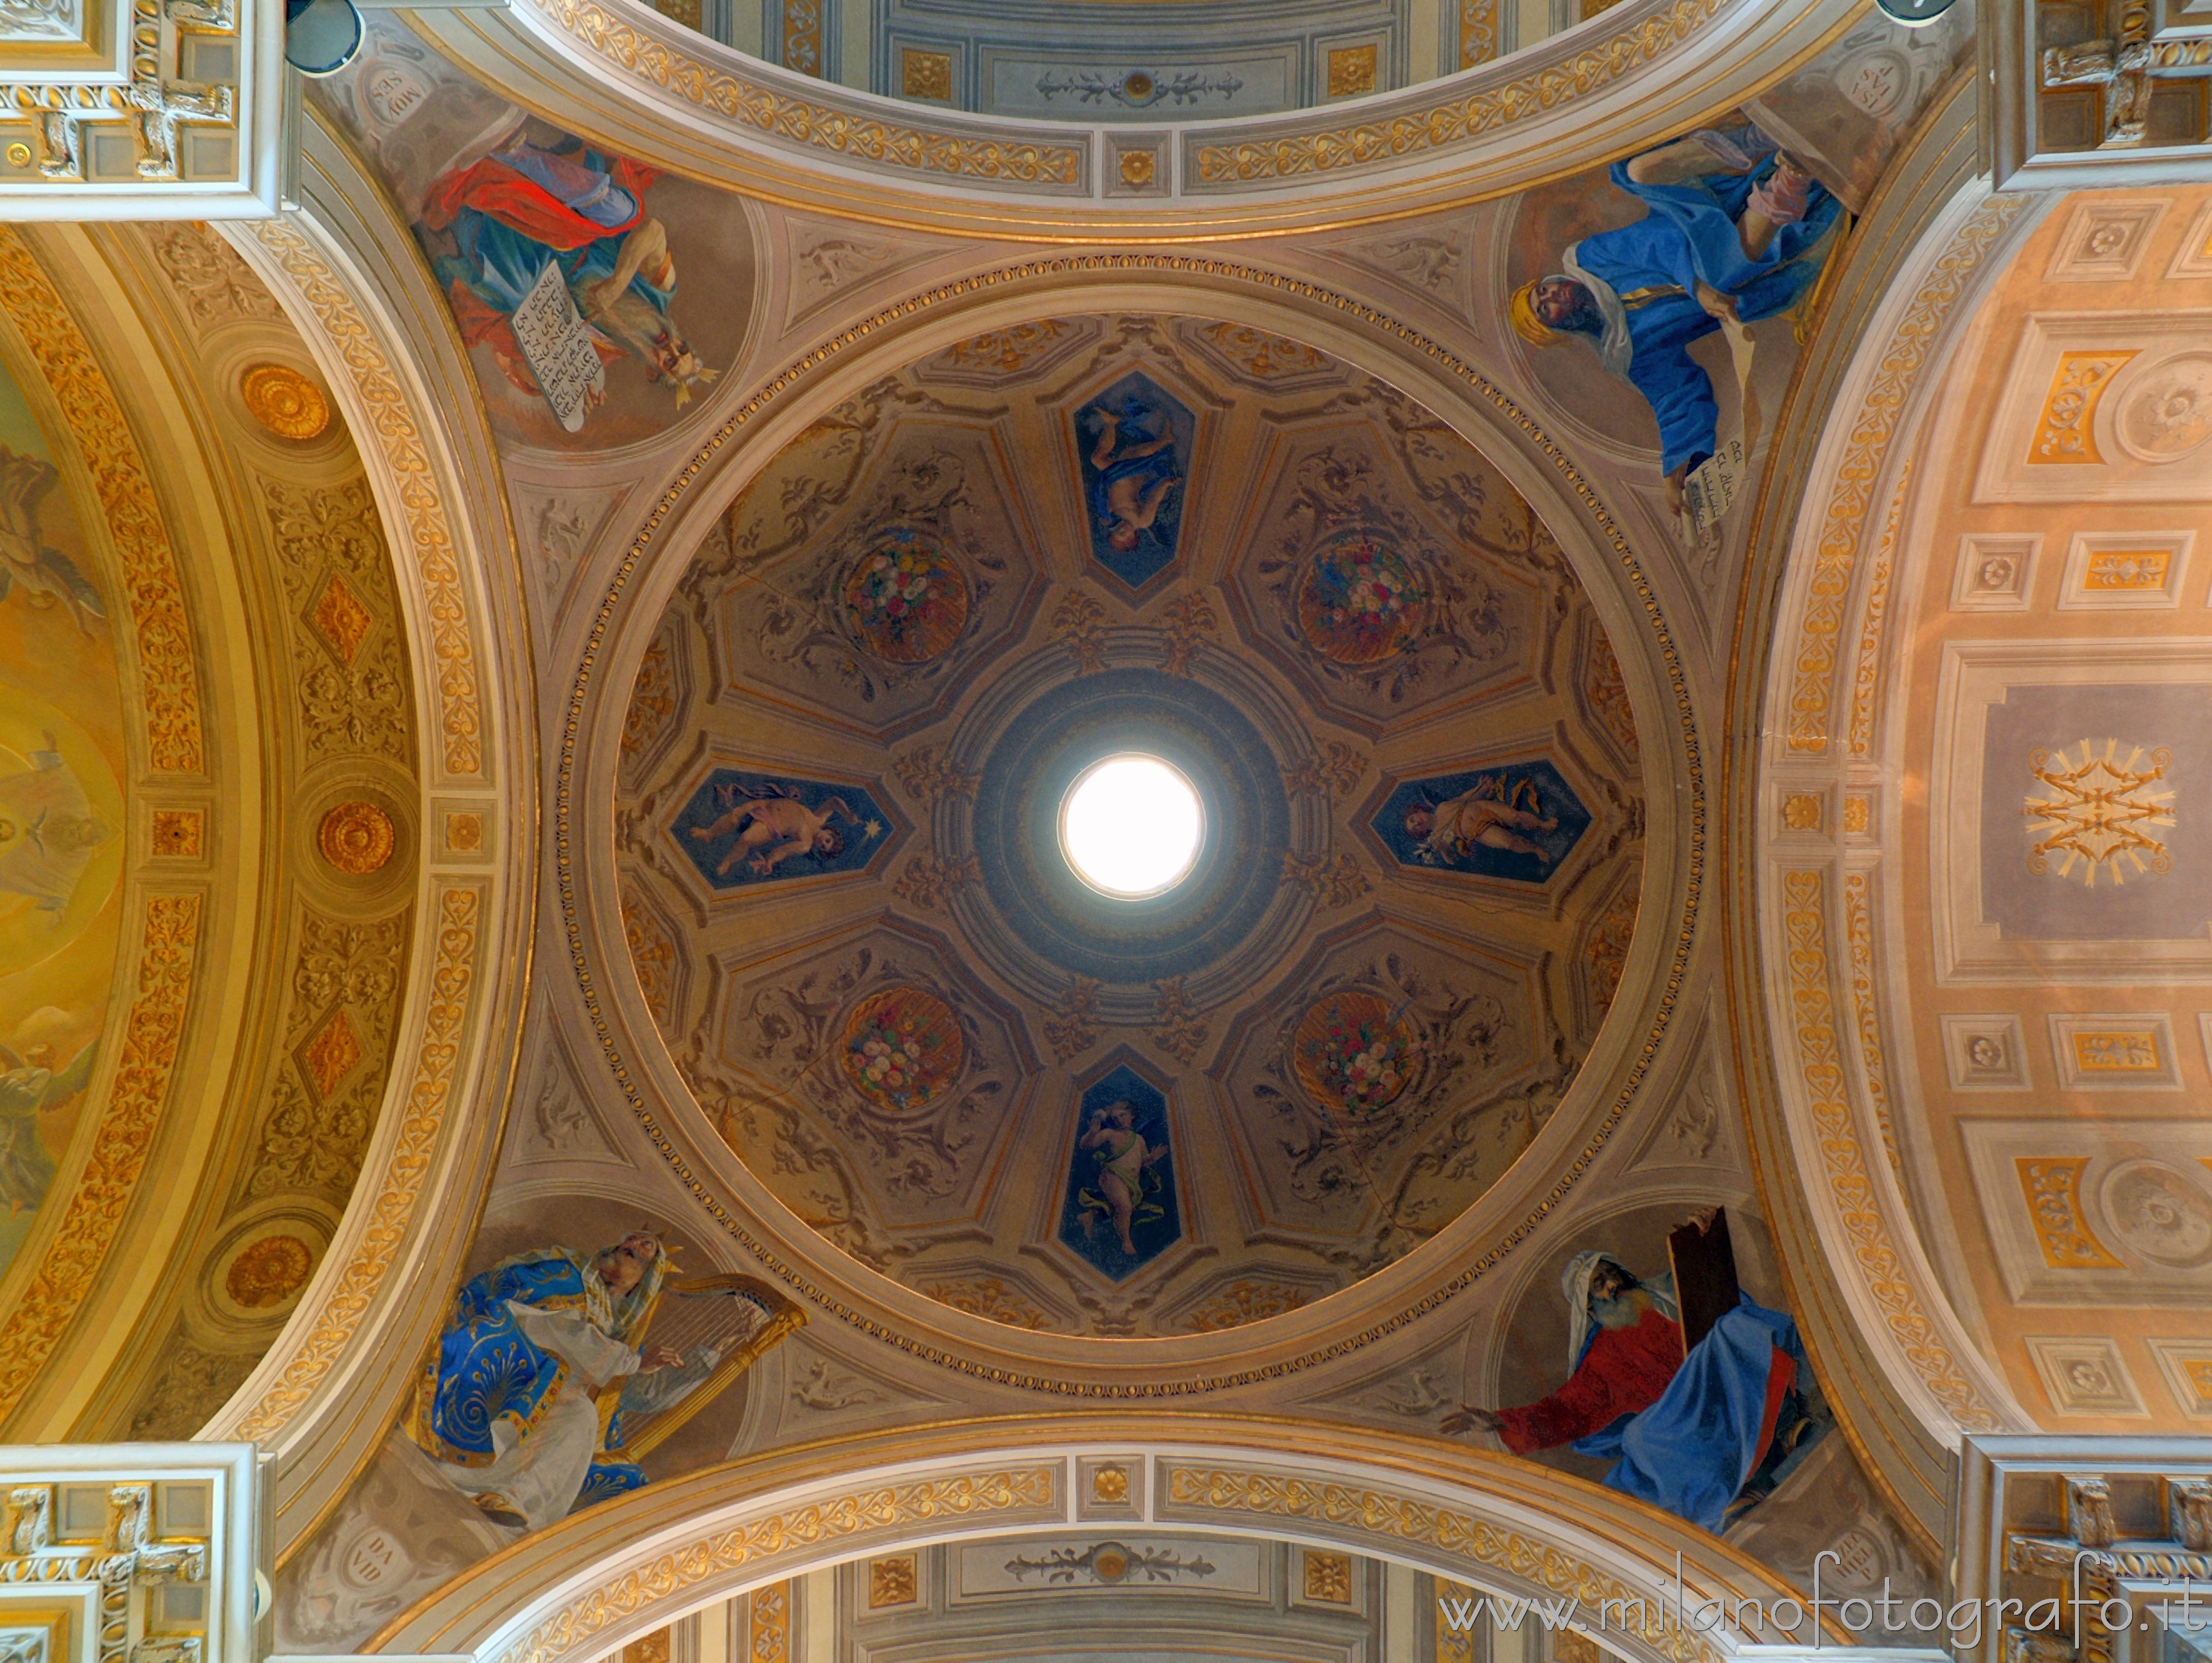 Rimini (Italy): Interior of the dome of the Sanctuary of the Madonna della Misericordia - Rimini (Italy)